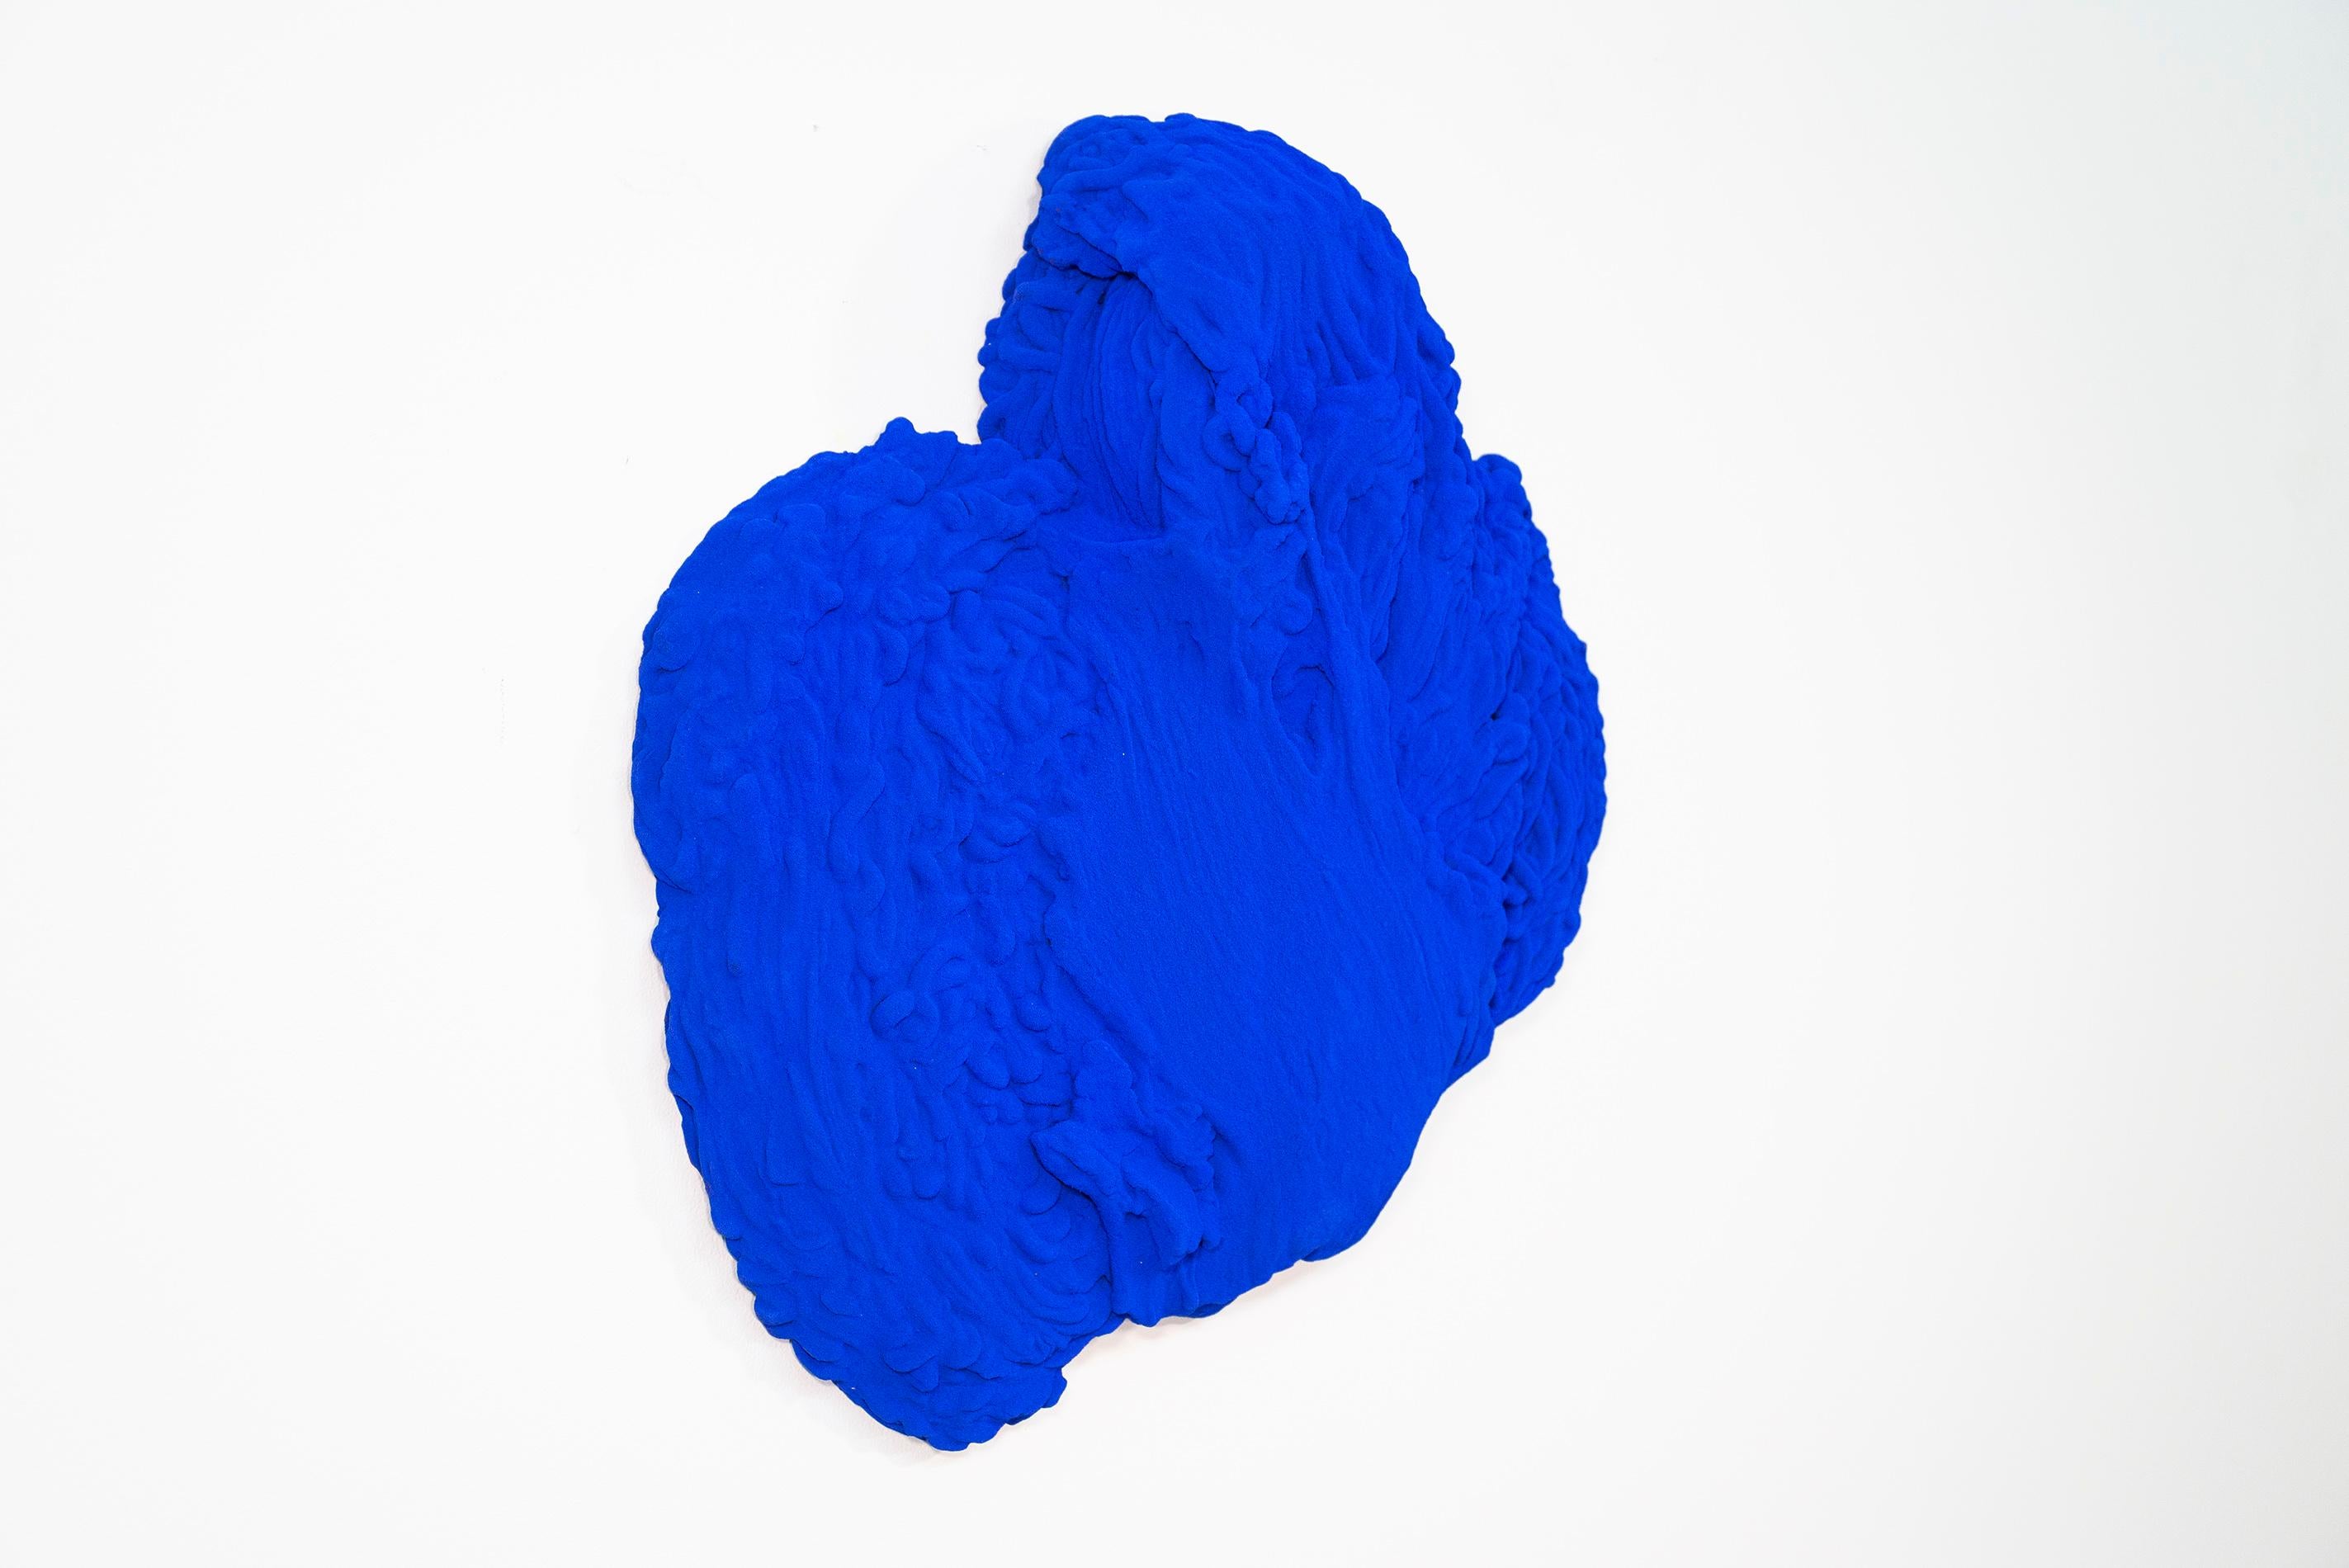 Blau Matter 2 - matt, blau, strukturiert, abstrakt, Mischtechnik-Wandskulptur (Zeitgenössisch), Sculpture, von Shayne Dark